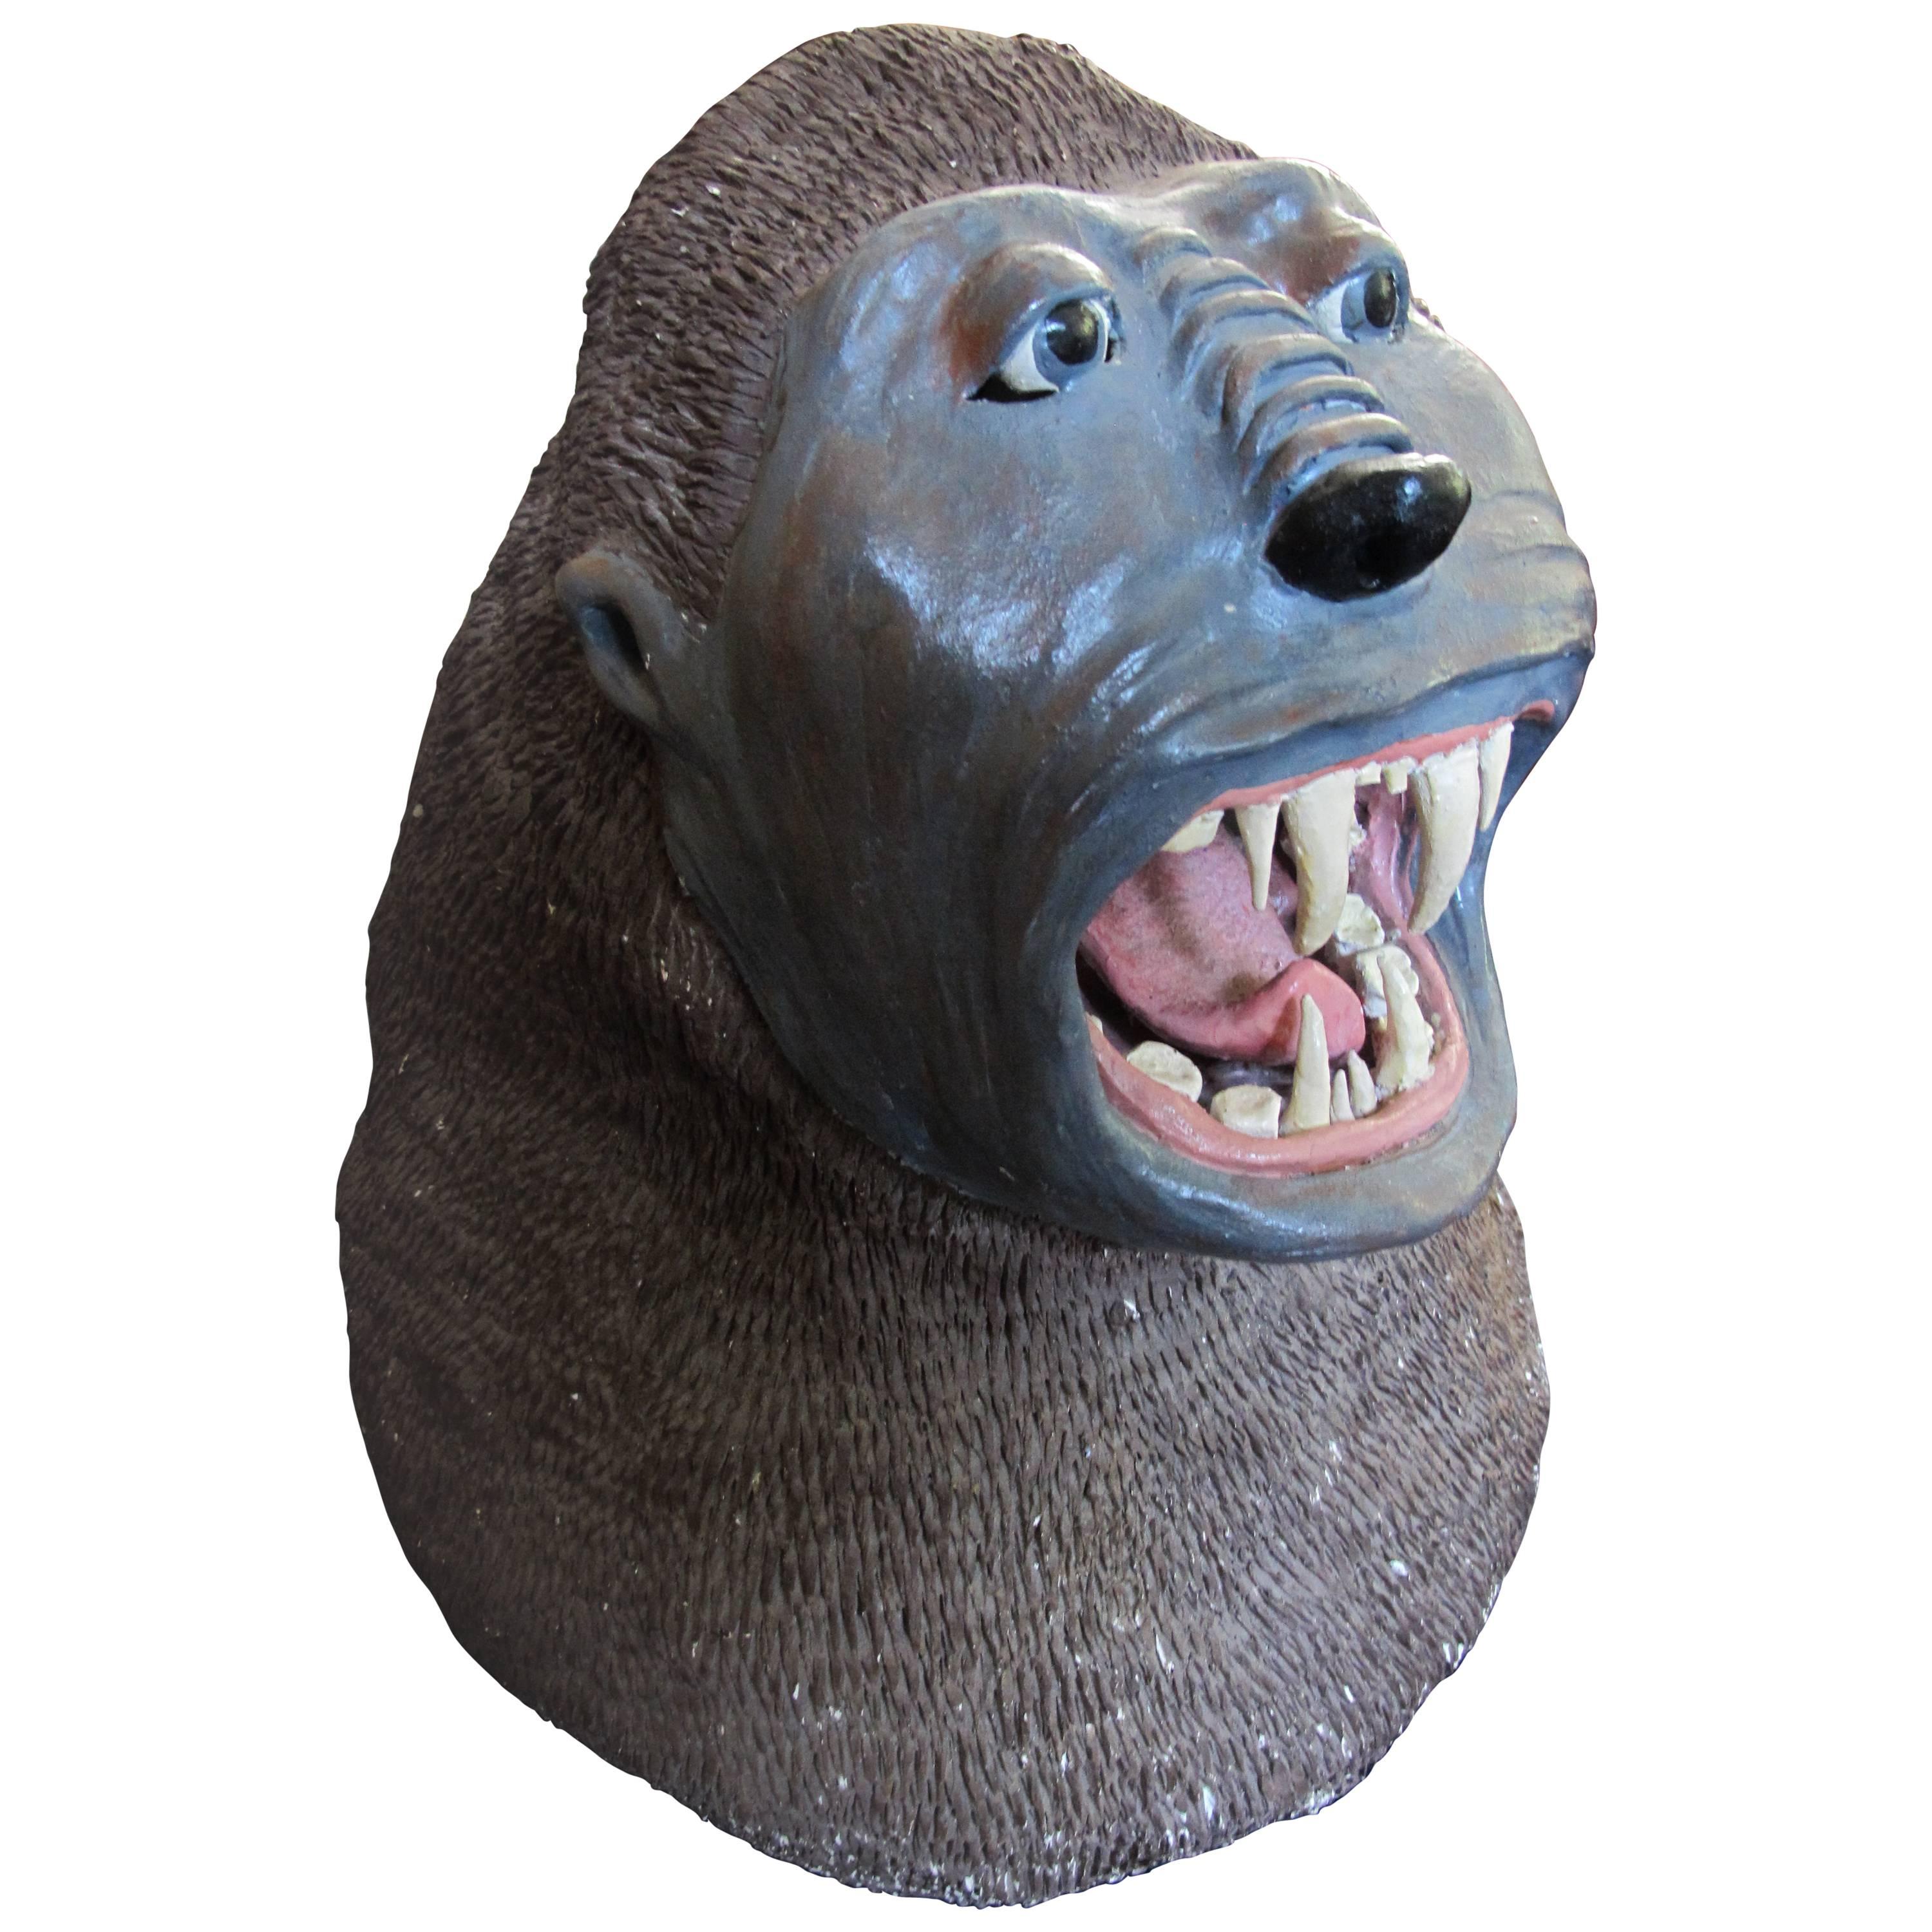 Ceramic Gorilla Head from a Carnival Arcade